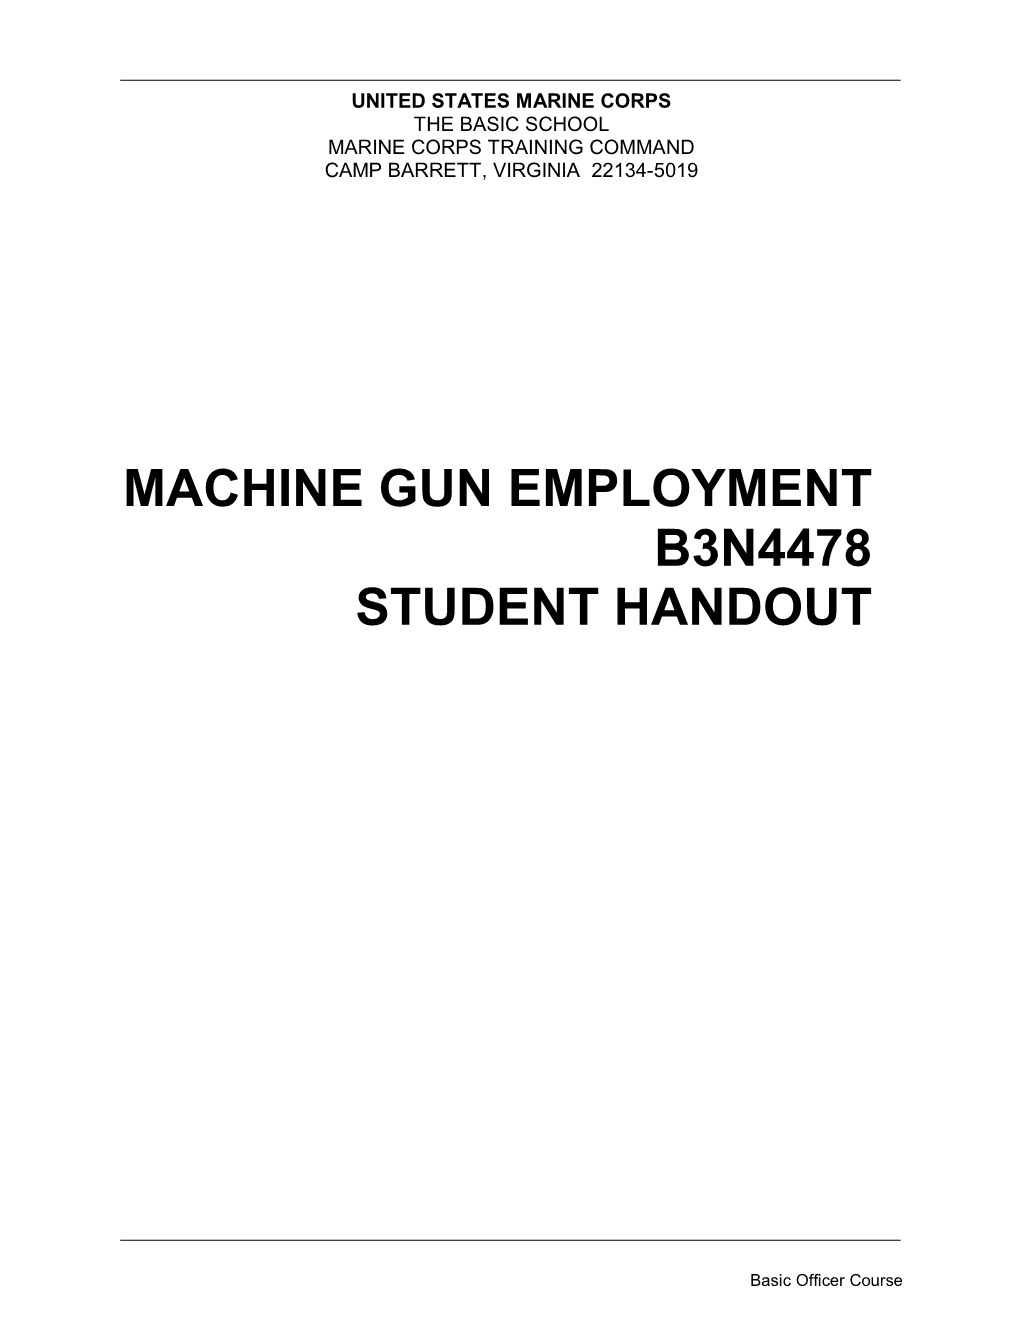 Download Machine-Gun-Employment